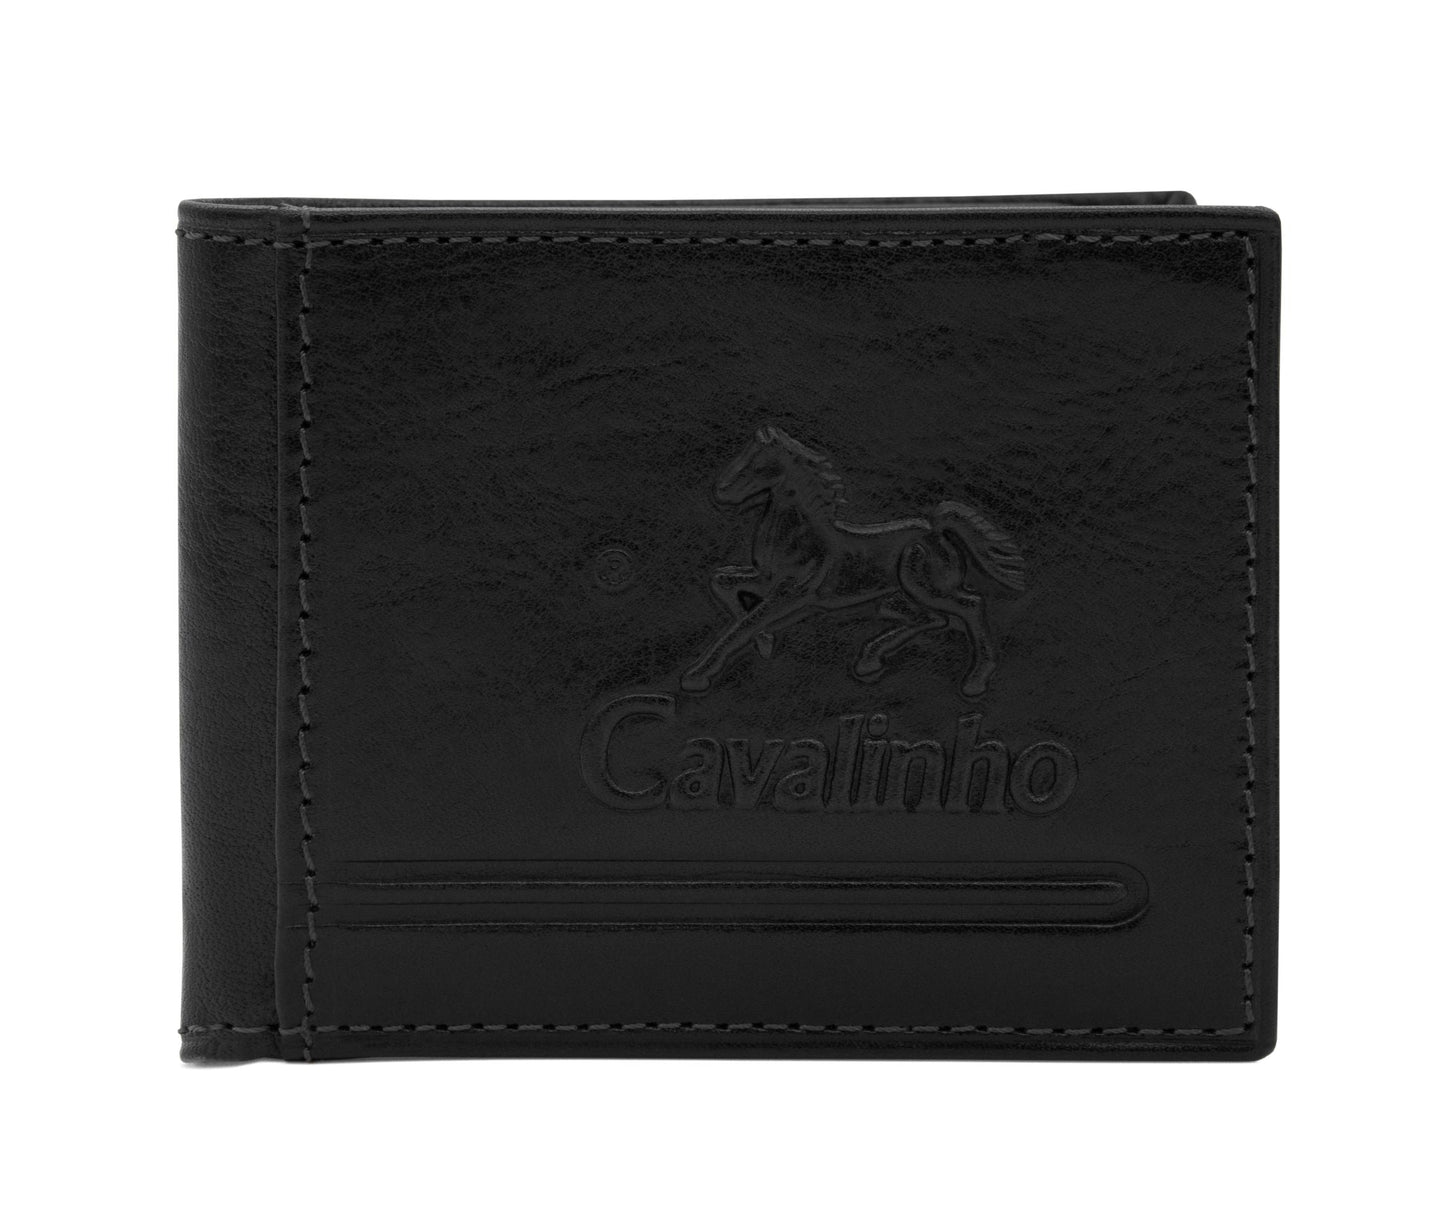 #color_ Black | Cavalinho Men's Bifold Leather Wallet - Black - 28610572.01_1